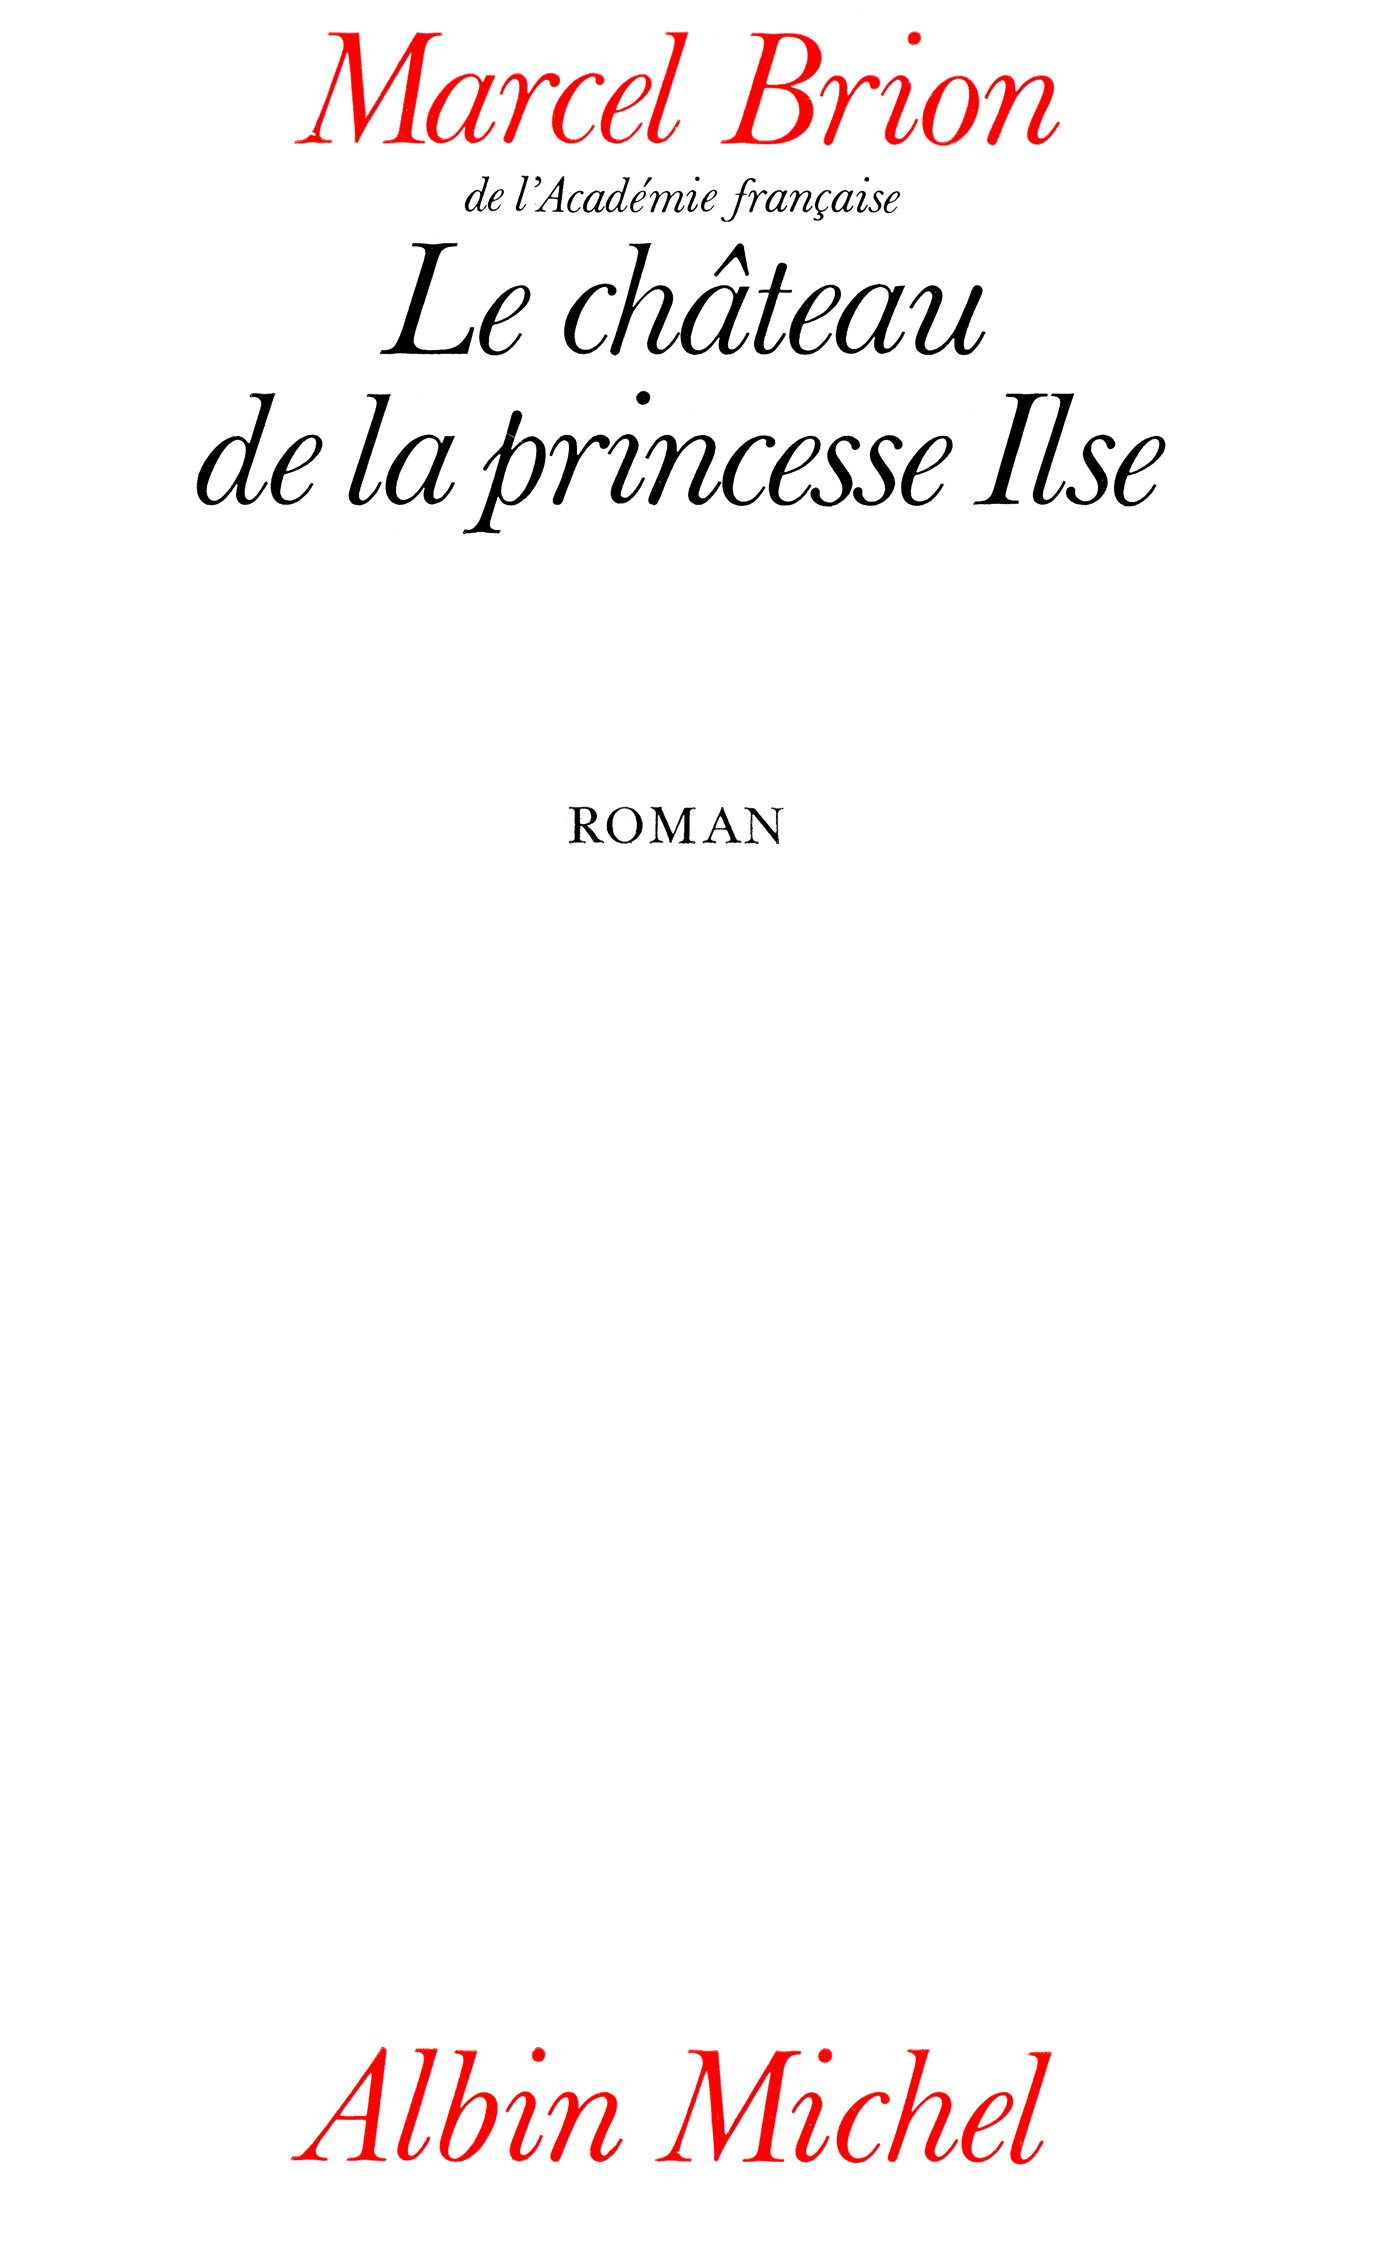 Couverture du livre Le Château de la princesse Ilse